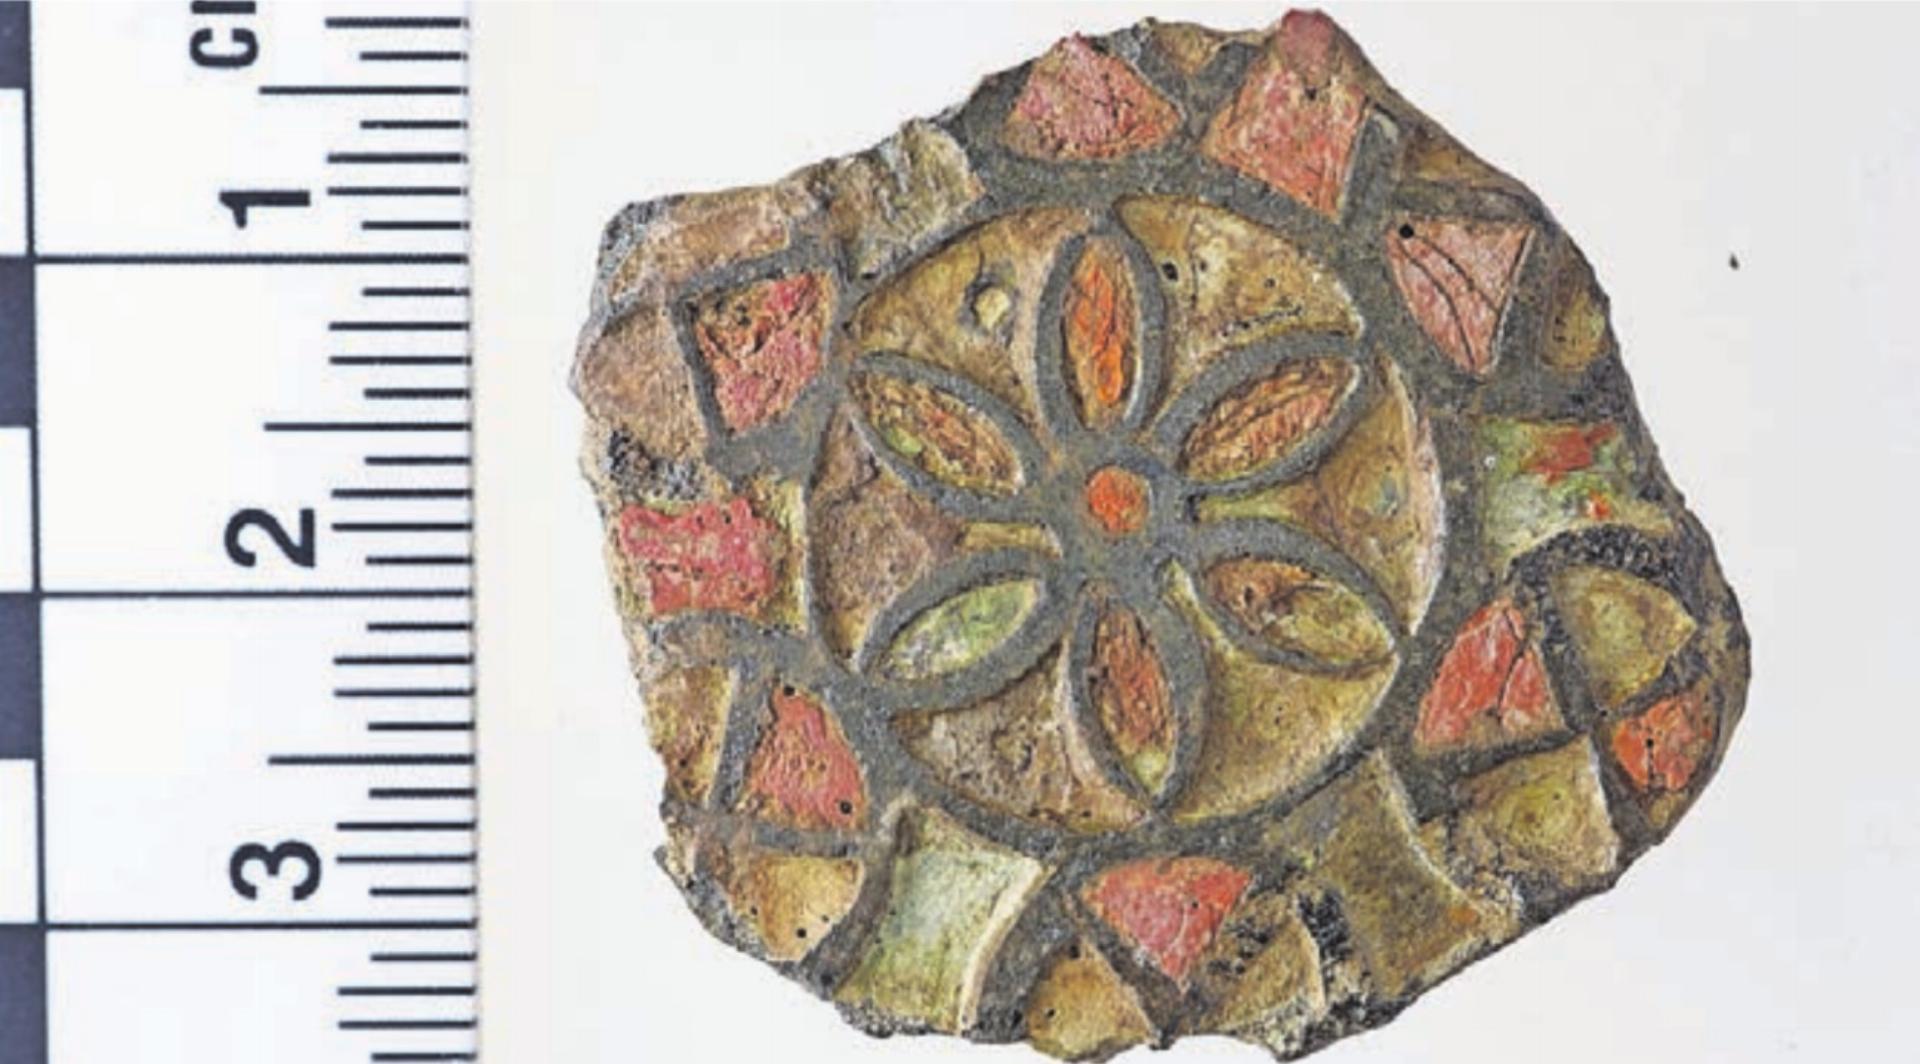 Das gefundene Stück stammt vermutlich aus dem 2. oder 3. Jahrhundert. Bild: zg